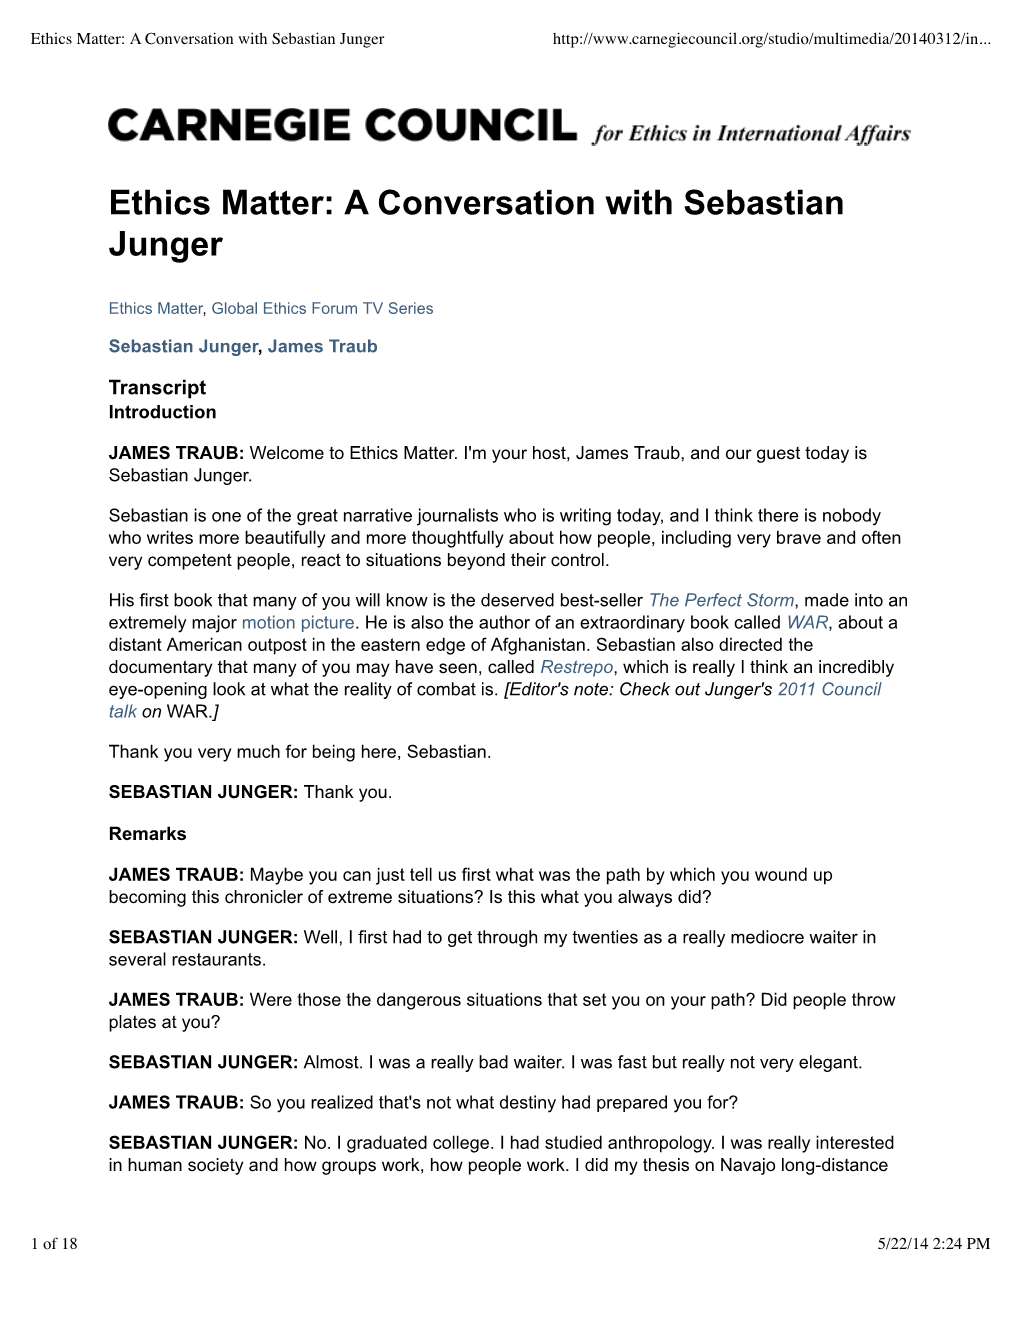 Ethics Matter: a Conversation with Sebastian Junger